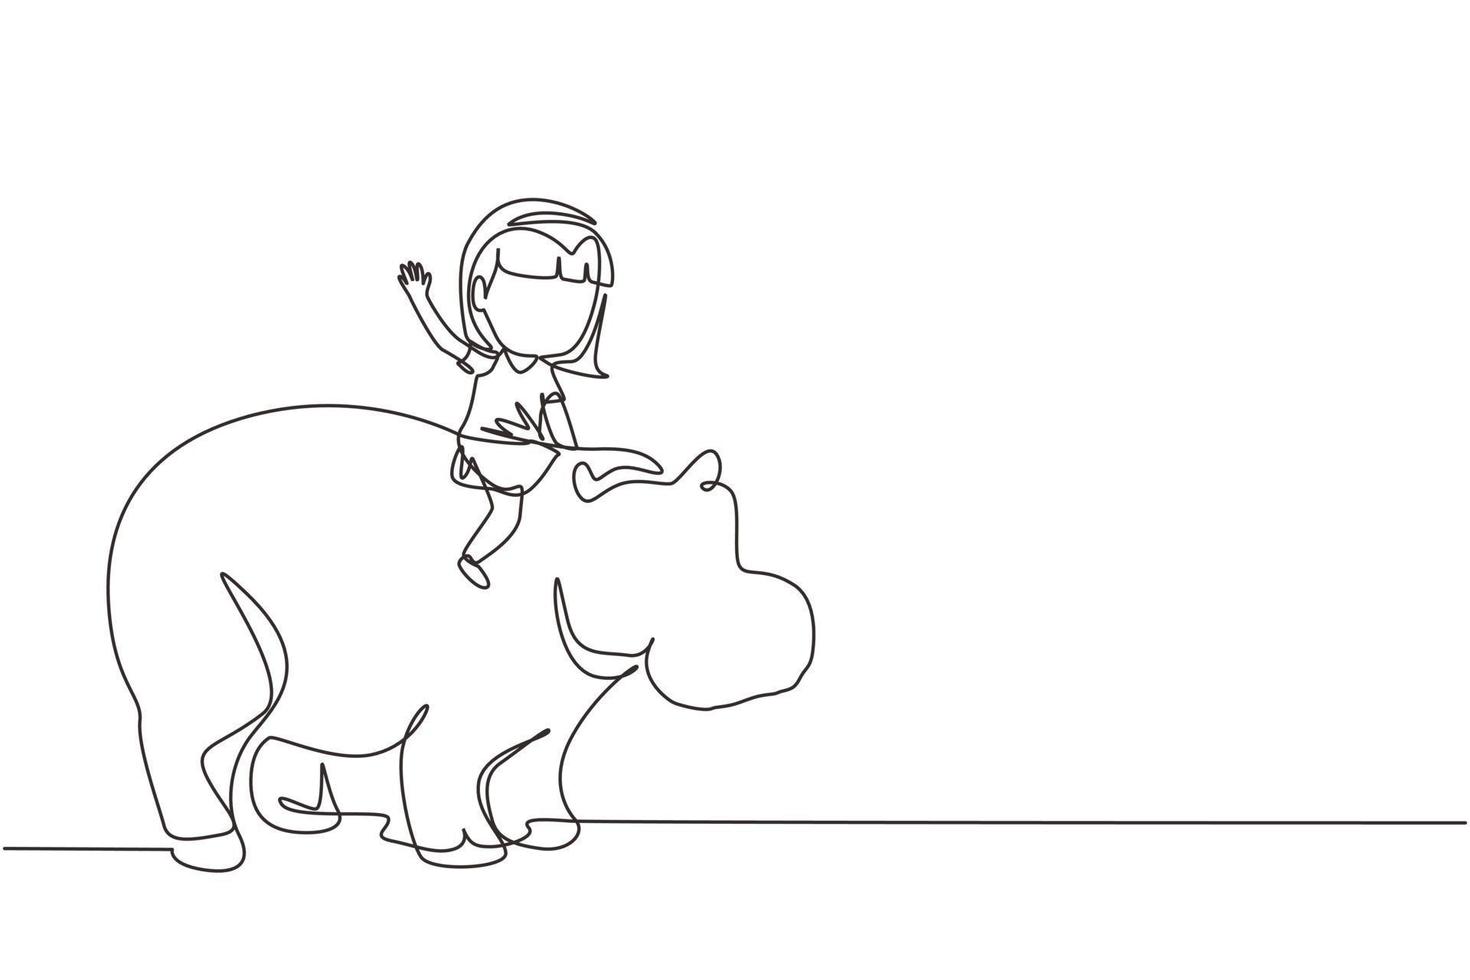 una linea continua che disegna una bambina felice che cavalca un forte ippopotamo. bambino seduto sull'ippopotamo posteriore nello zoo. bambini che imparano a cavalcare l'ippopotamo. illustrazione grafica vettoriale di disegno a linea singola